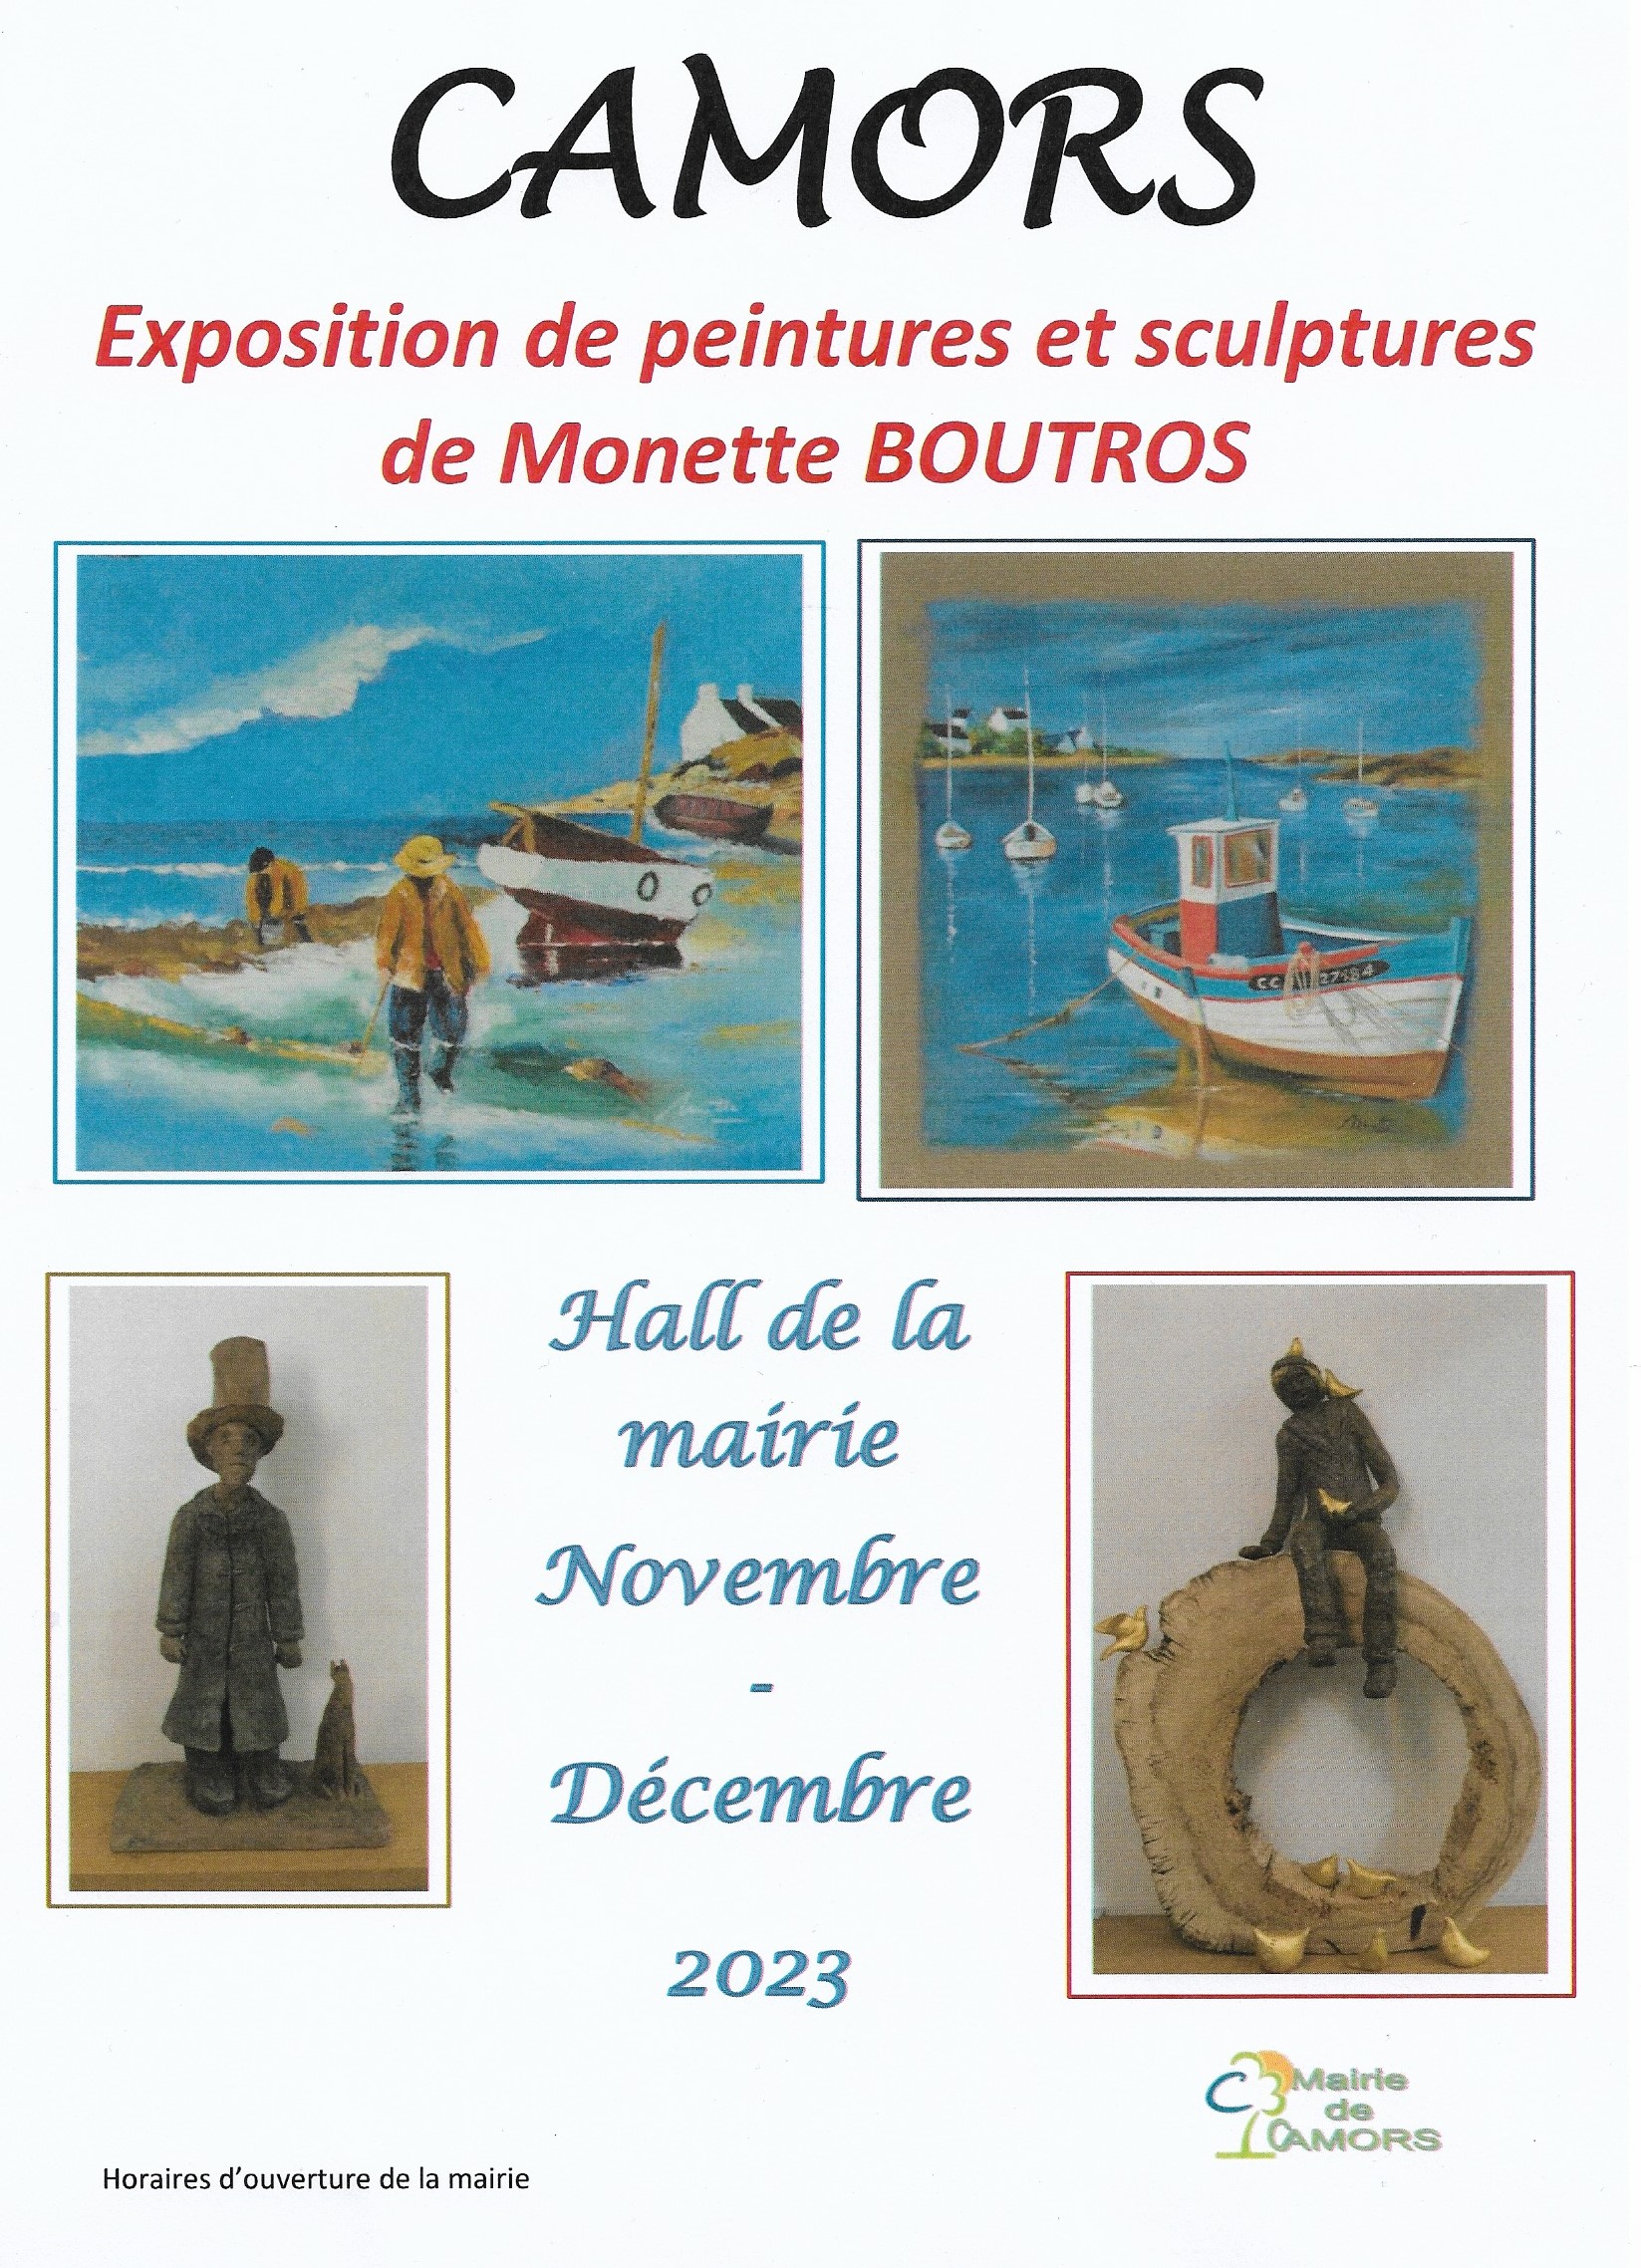 Expo Monette Boutros Novembre et Décembre 2023.jpg